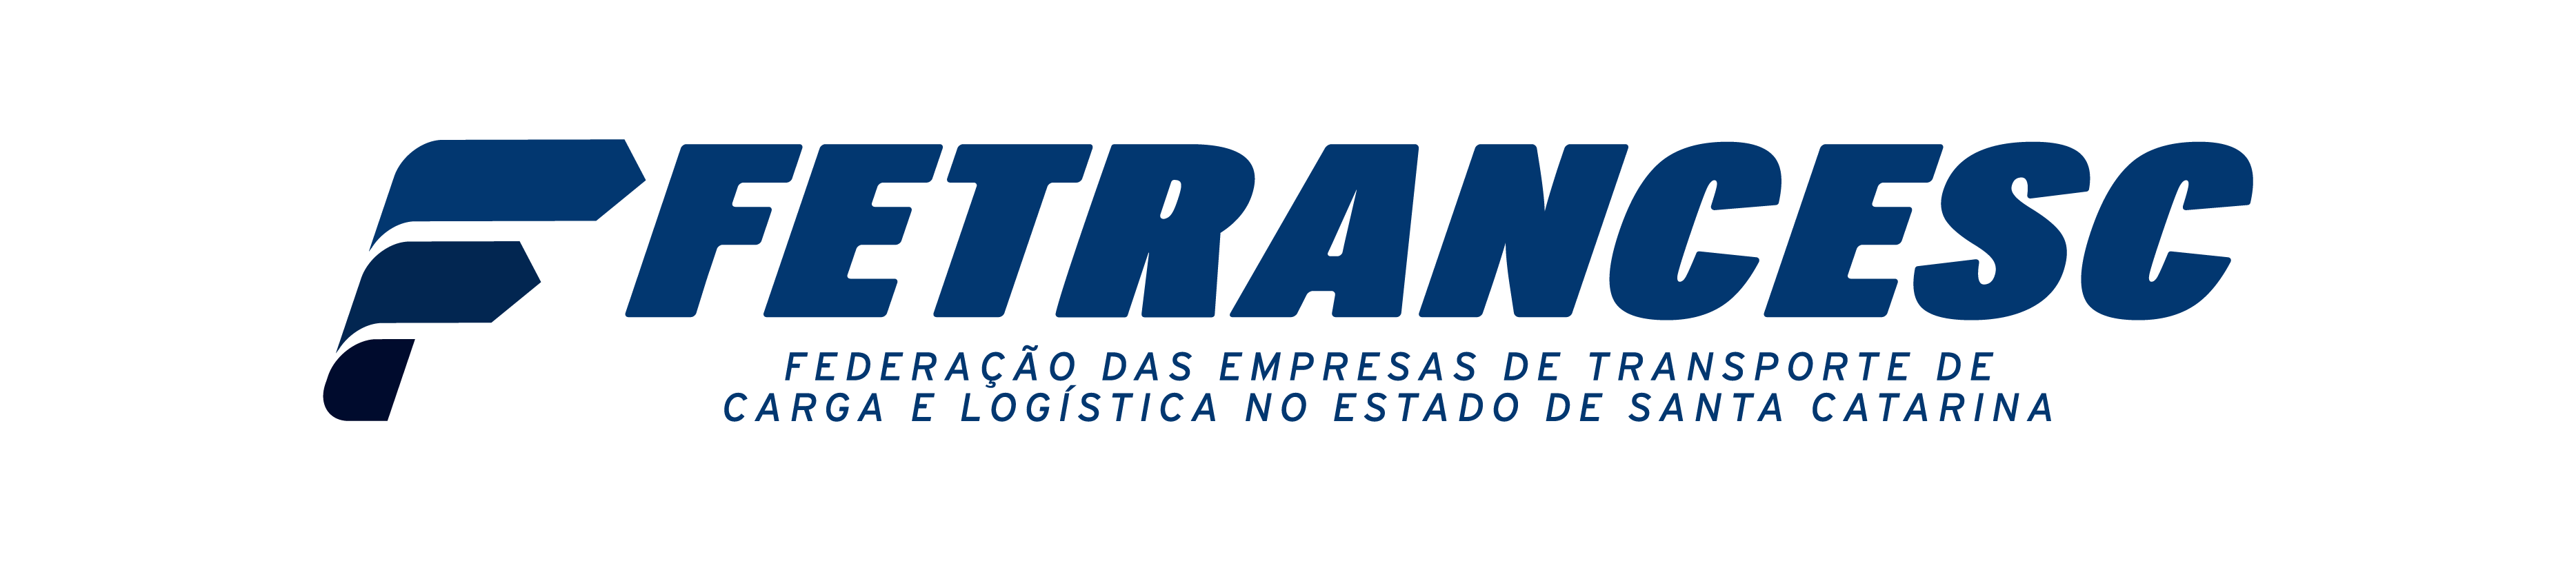 FETRANCESC - Federação das Empresas de Transporte de Cargas no Estado de Santa Catarina